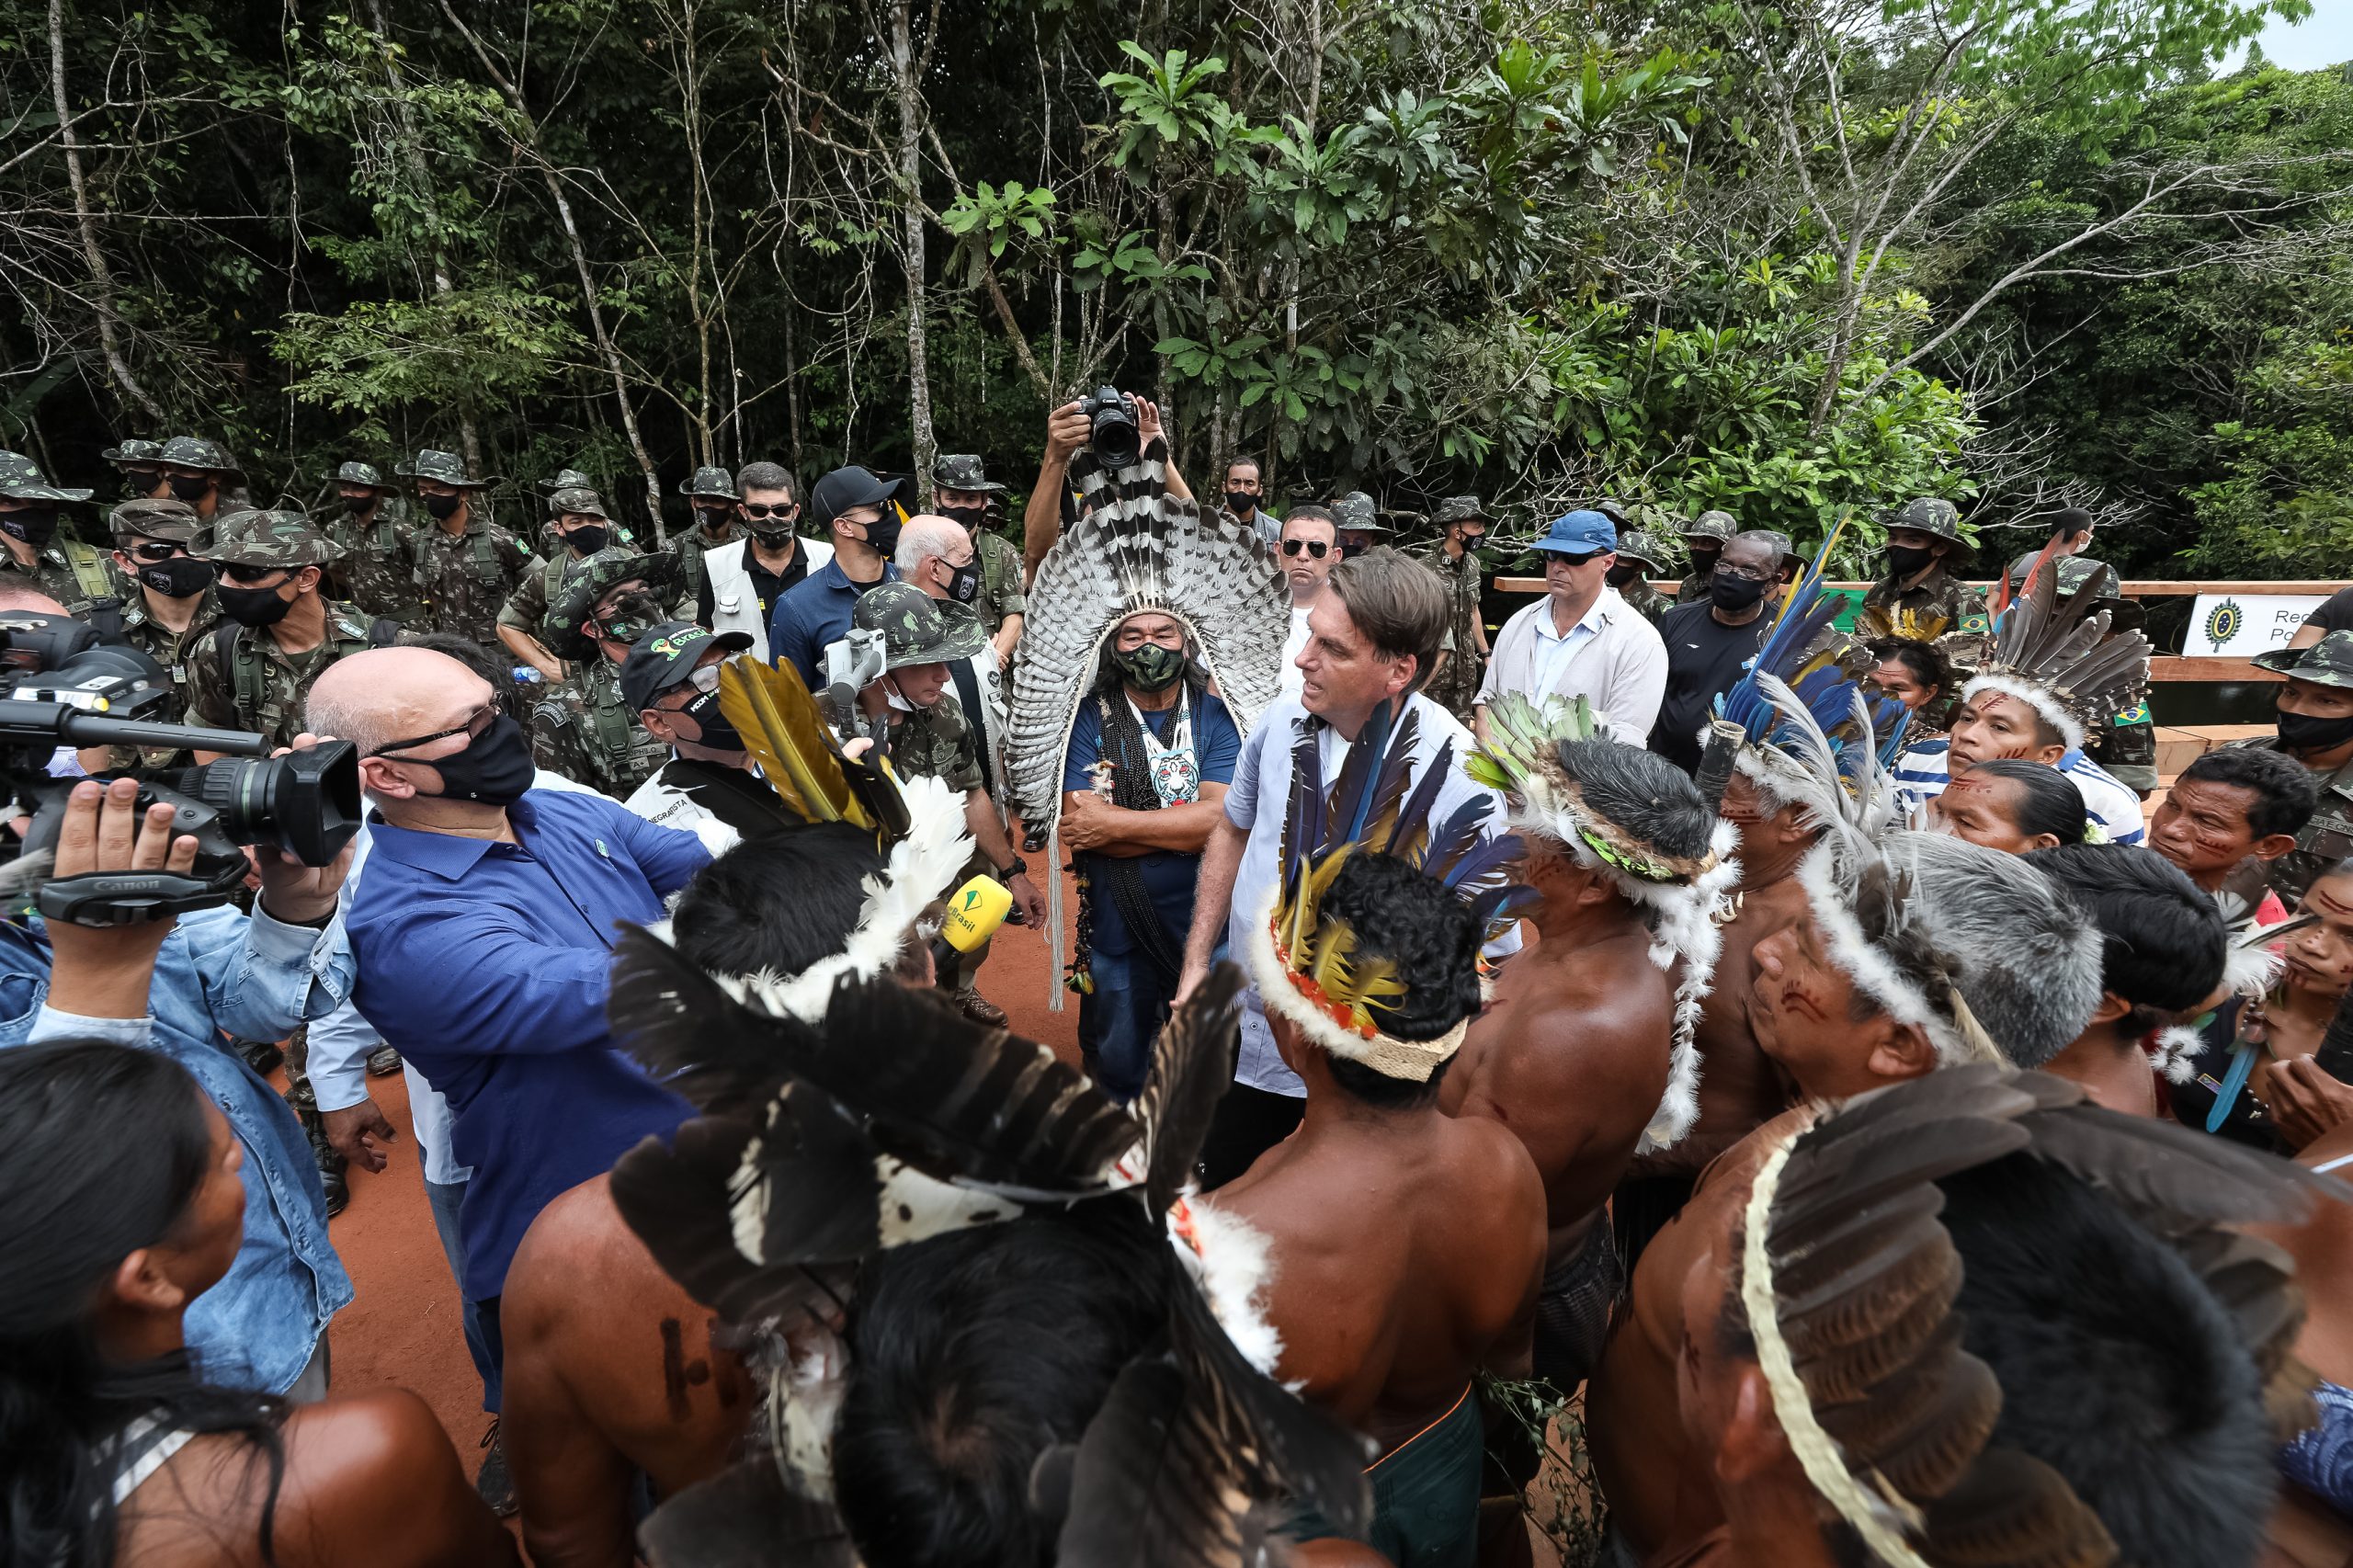 Sob clima de festa, indígenas recebem Bolsonaro com euforia e muitas fotos 23